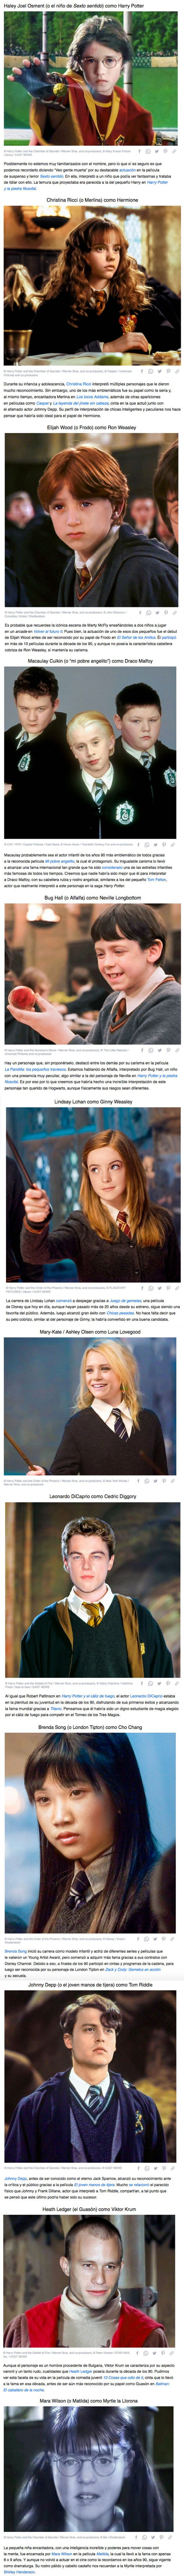 GALERÍA: Cómo se verían los estudiantes de Hogwarts si “Harry Potter” se hubiera hecho en los 90 con actores famosos de la época